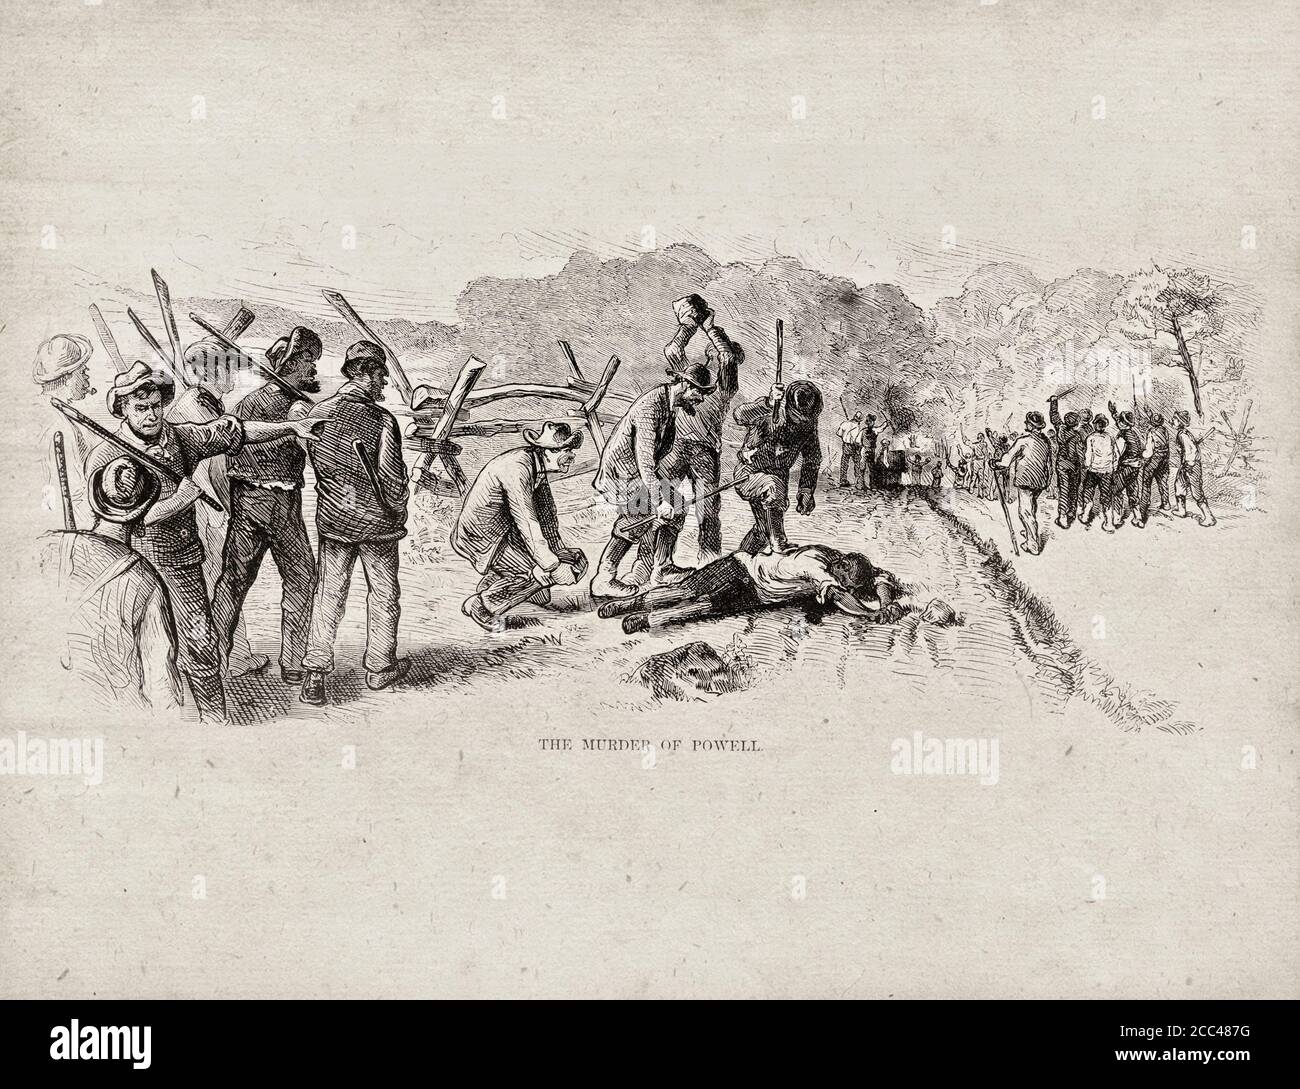 Der Mord an Powell. USA. 1872 Abbildung zeigt eine Gruppe irischer Immigrantenarbeiter mit Vereinen, die über dem Körper des afroamerikanischen Arbeiters De stehen Stockfoto